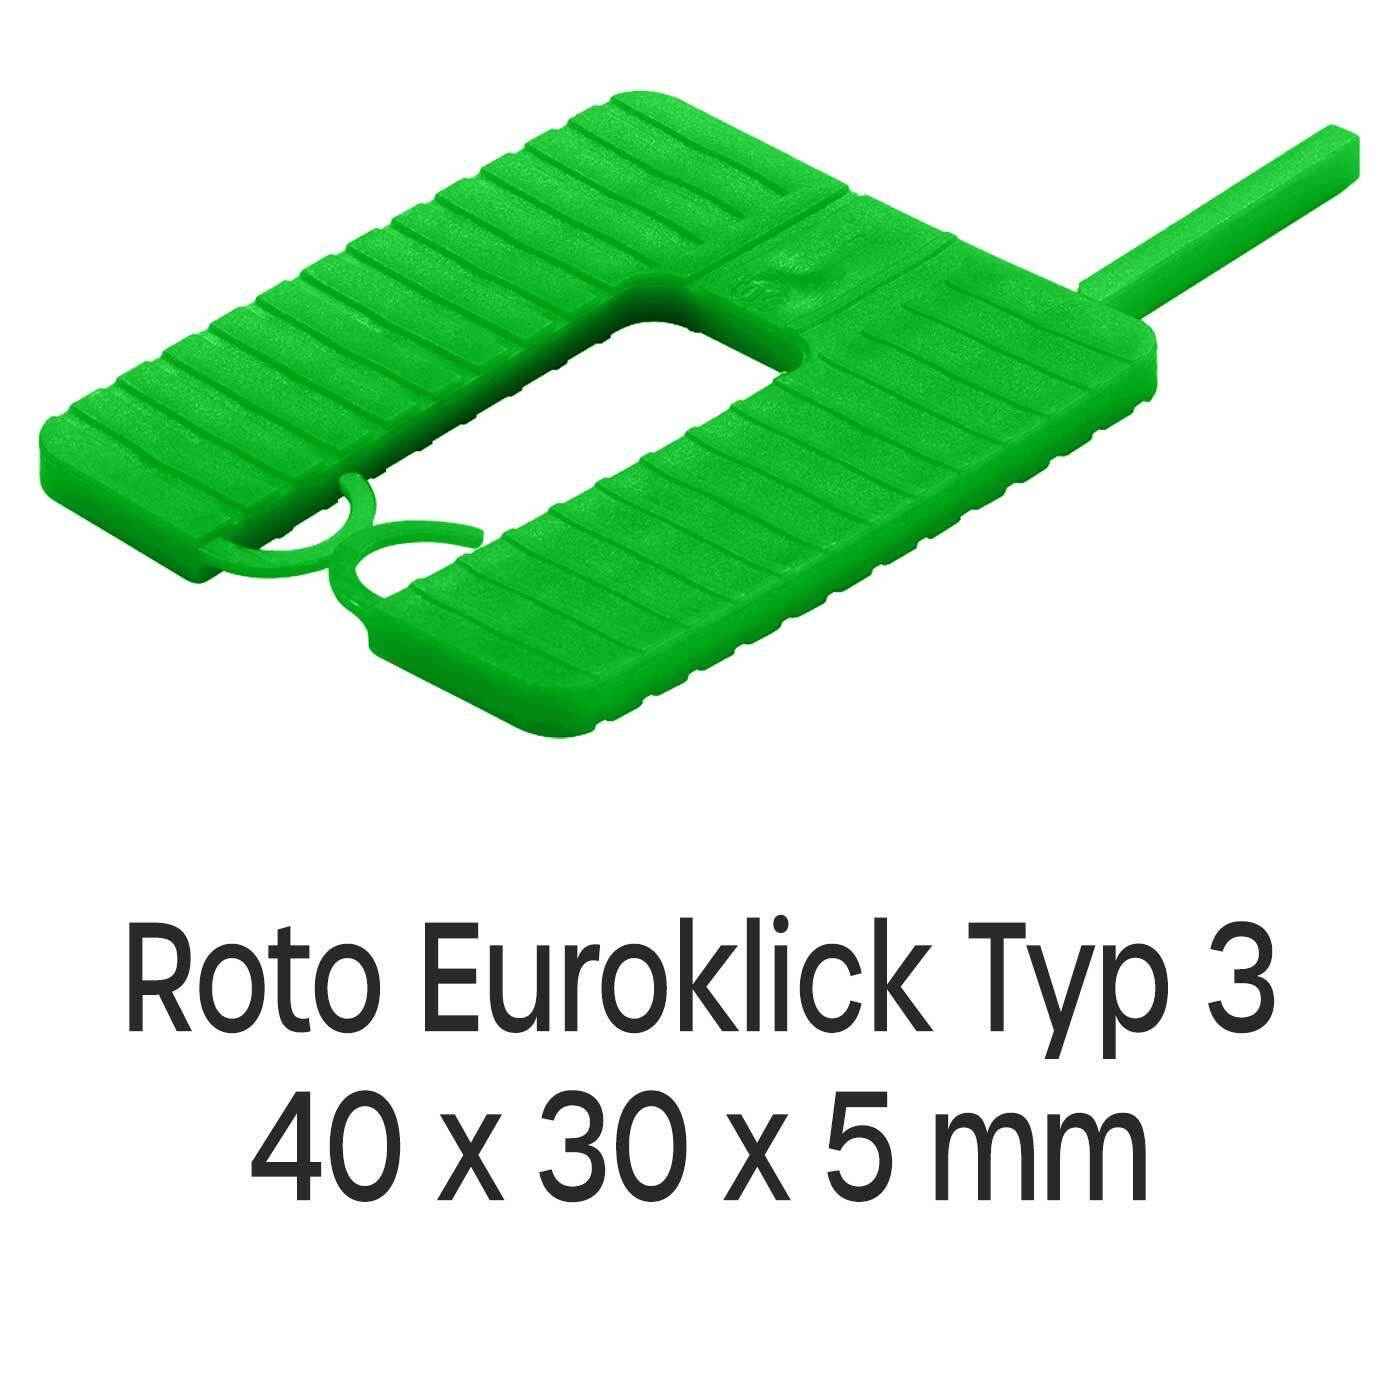 Distanzplatten Roto Euroklick Typ 3 40 x 30 x 5 mm 1000 Stück